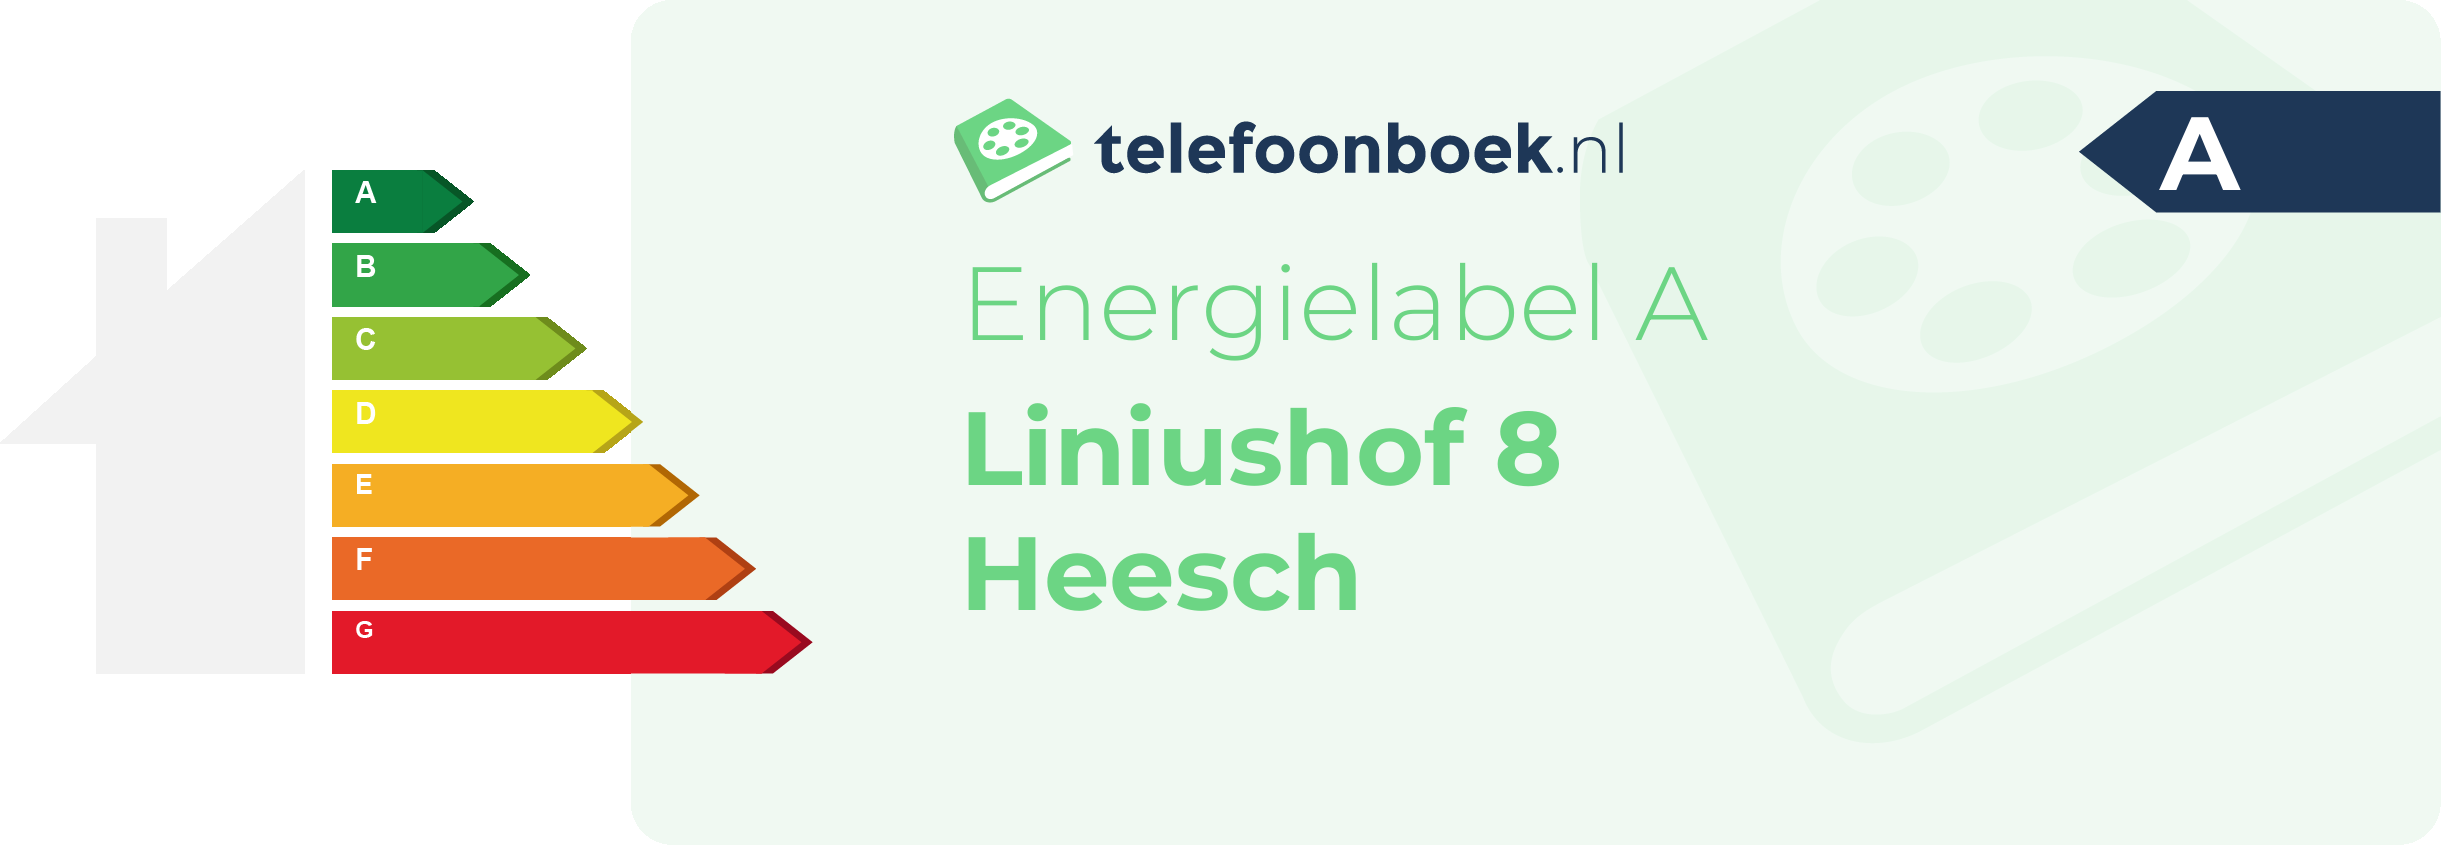 Energielabel Liniushof 8 Heesch